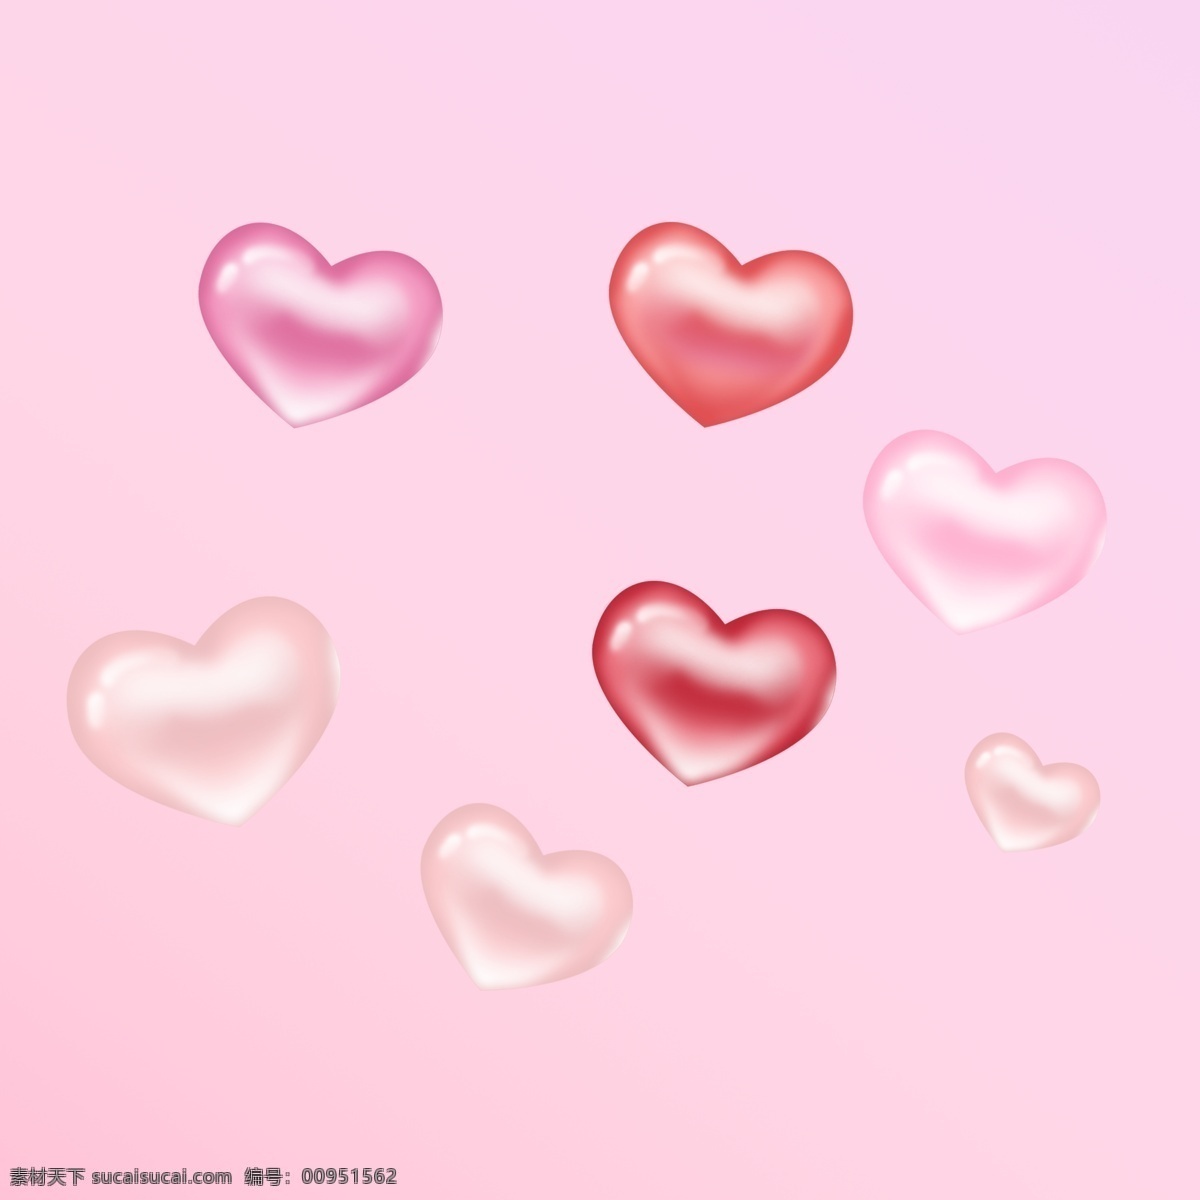 粉色浪漫心形 粉色心形 心形气球 浪漫气球 粉色浪漫气球 七夕素材 婚庆素材 心形 粉色 背景